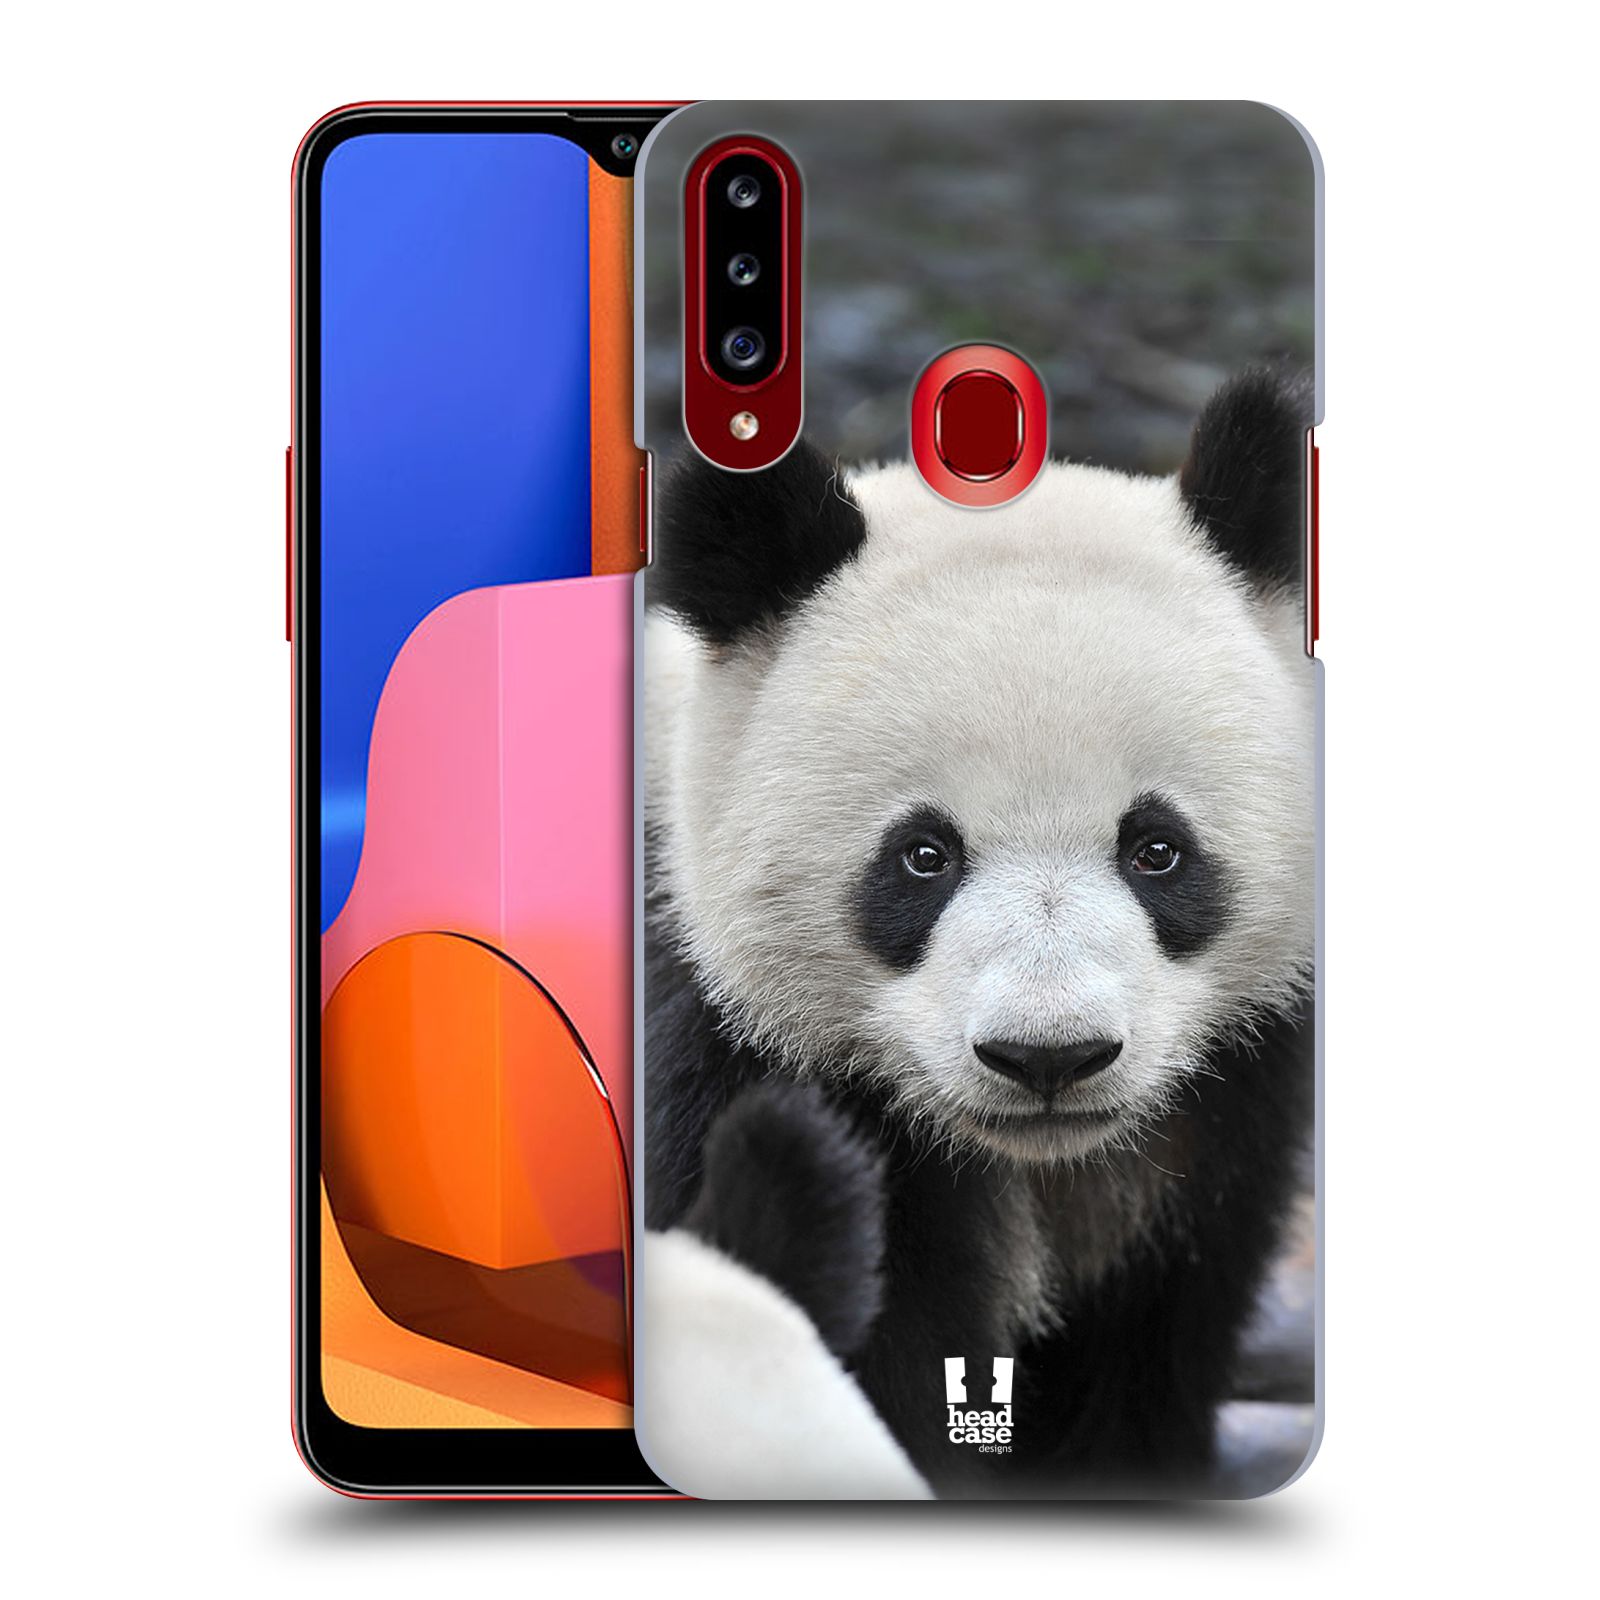 Zadní obal pro mobil Samsung Galaxy A20s - HEAD CASE - Svět zvířat medvěd panda